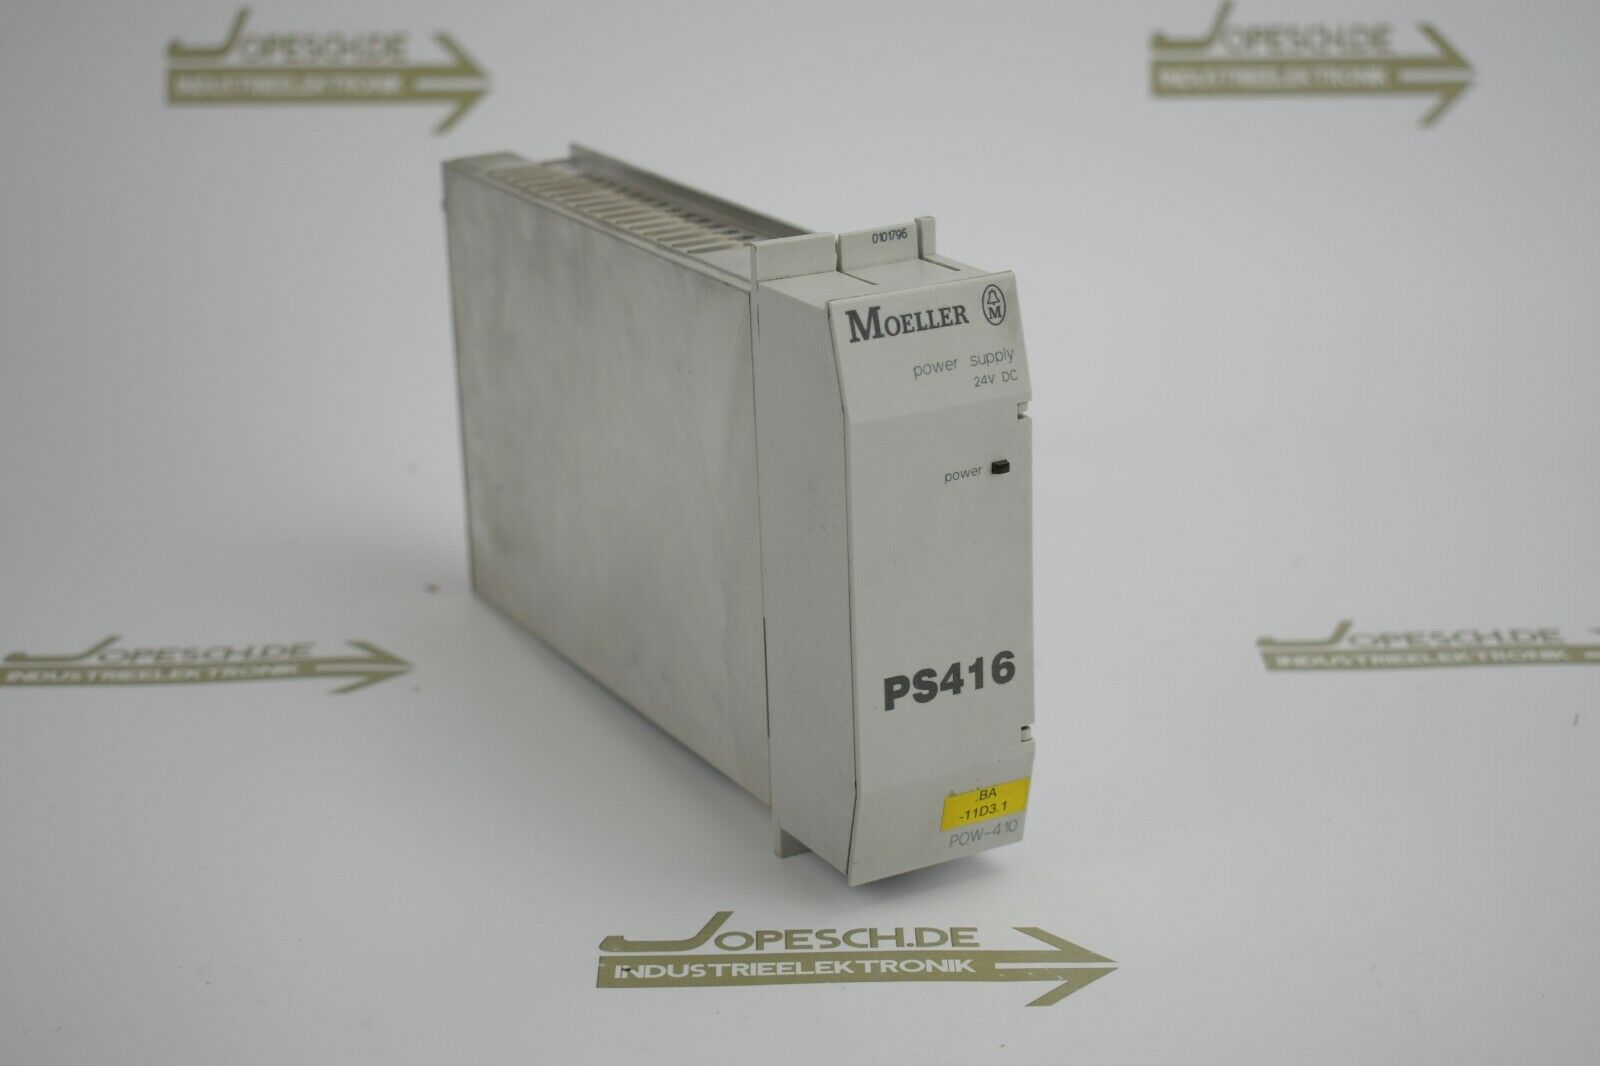 Klöckner Moeller power supply PS416 POW-410 78-070-0300